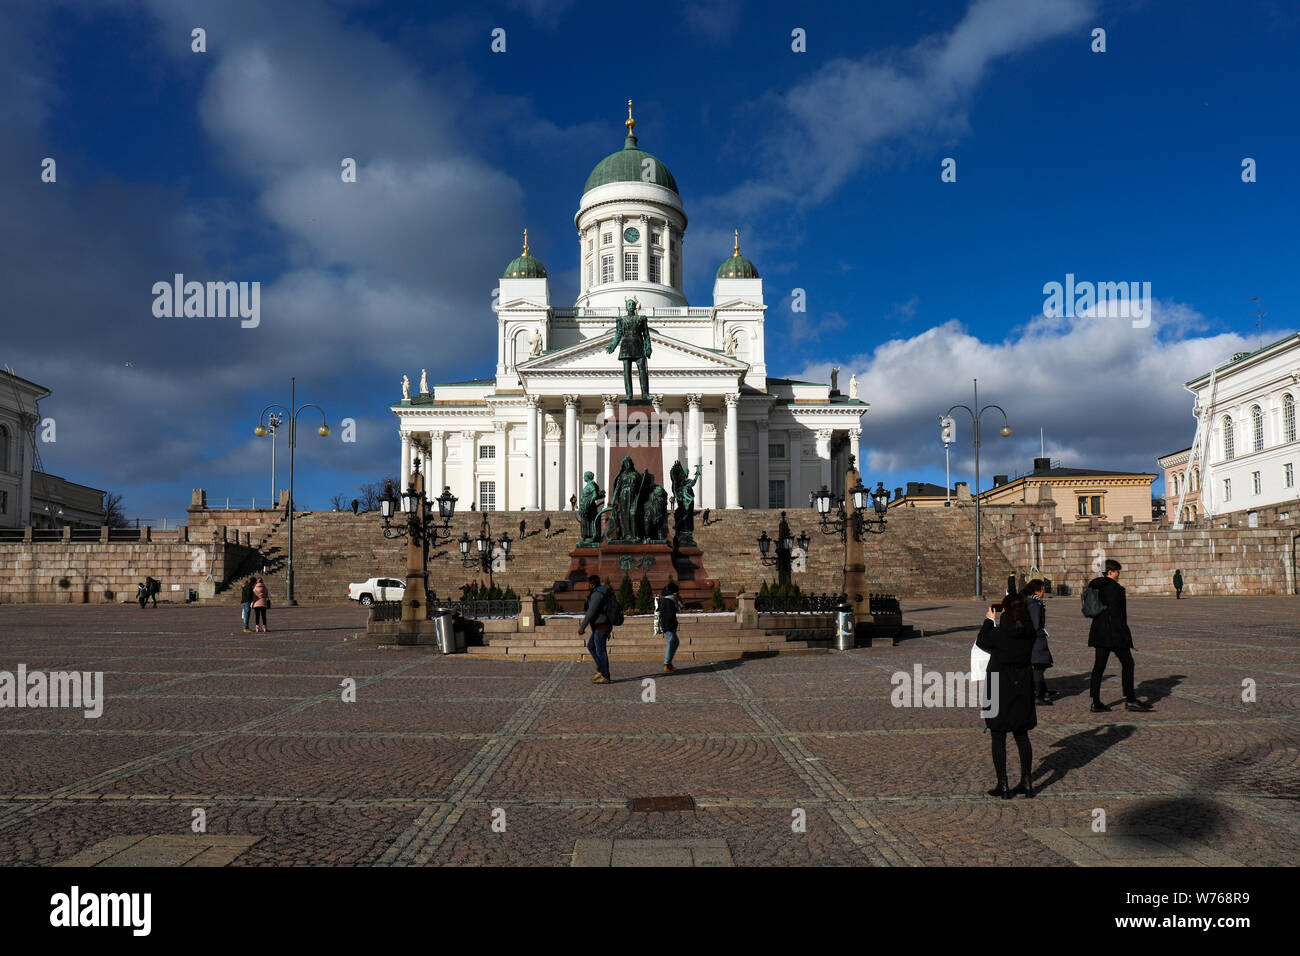 Cathédrale d'Helsinki avec les touristes occasionnels lors d'une froide journée de printemps précoce à Helsinki, Finlande Banque D'Images